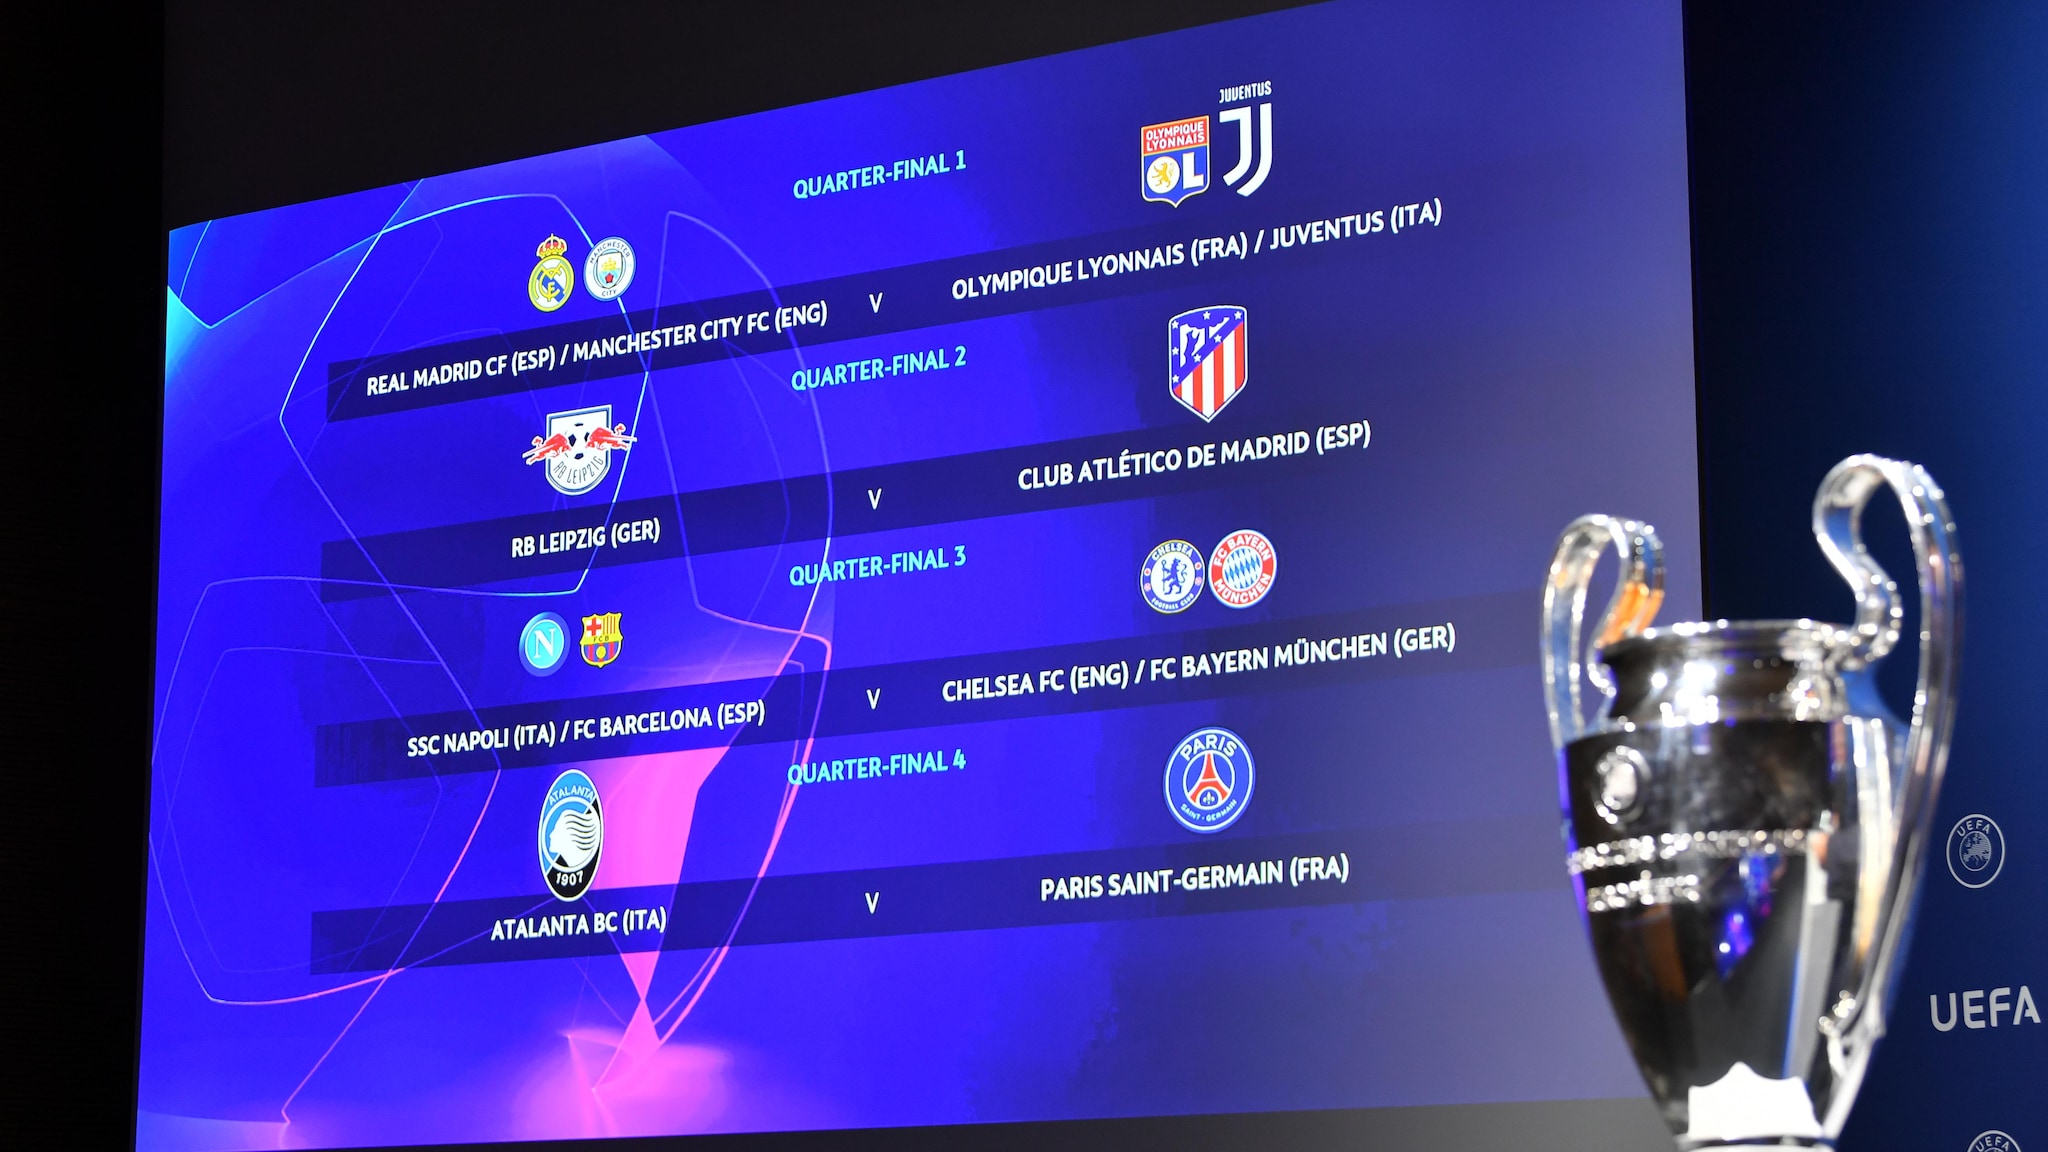 uefa champions league quarter final schedule